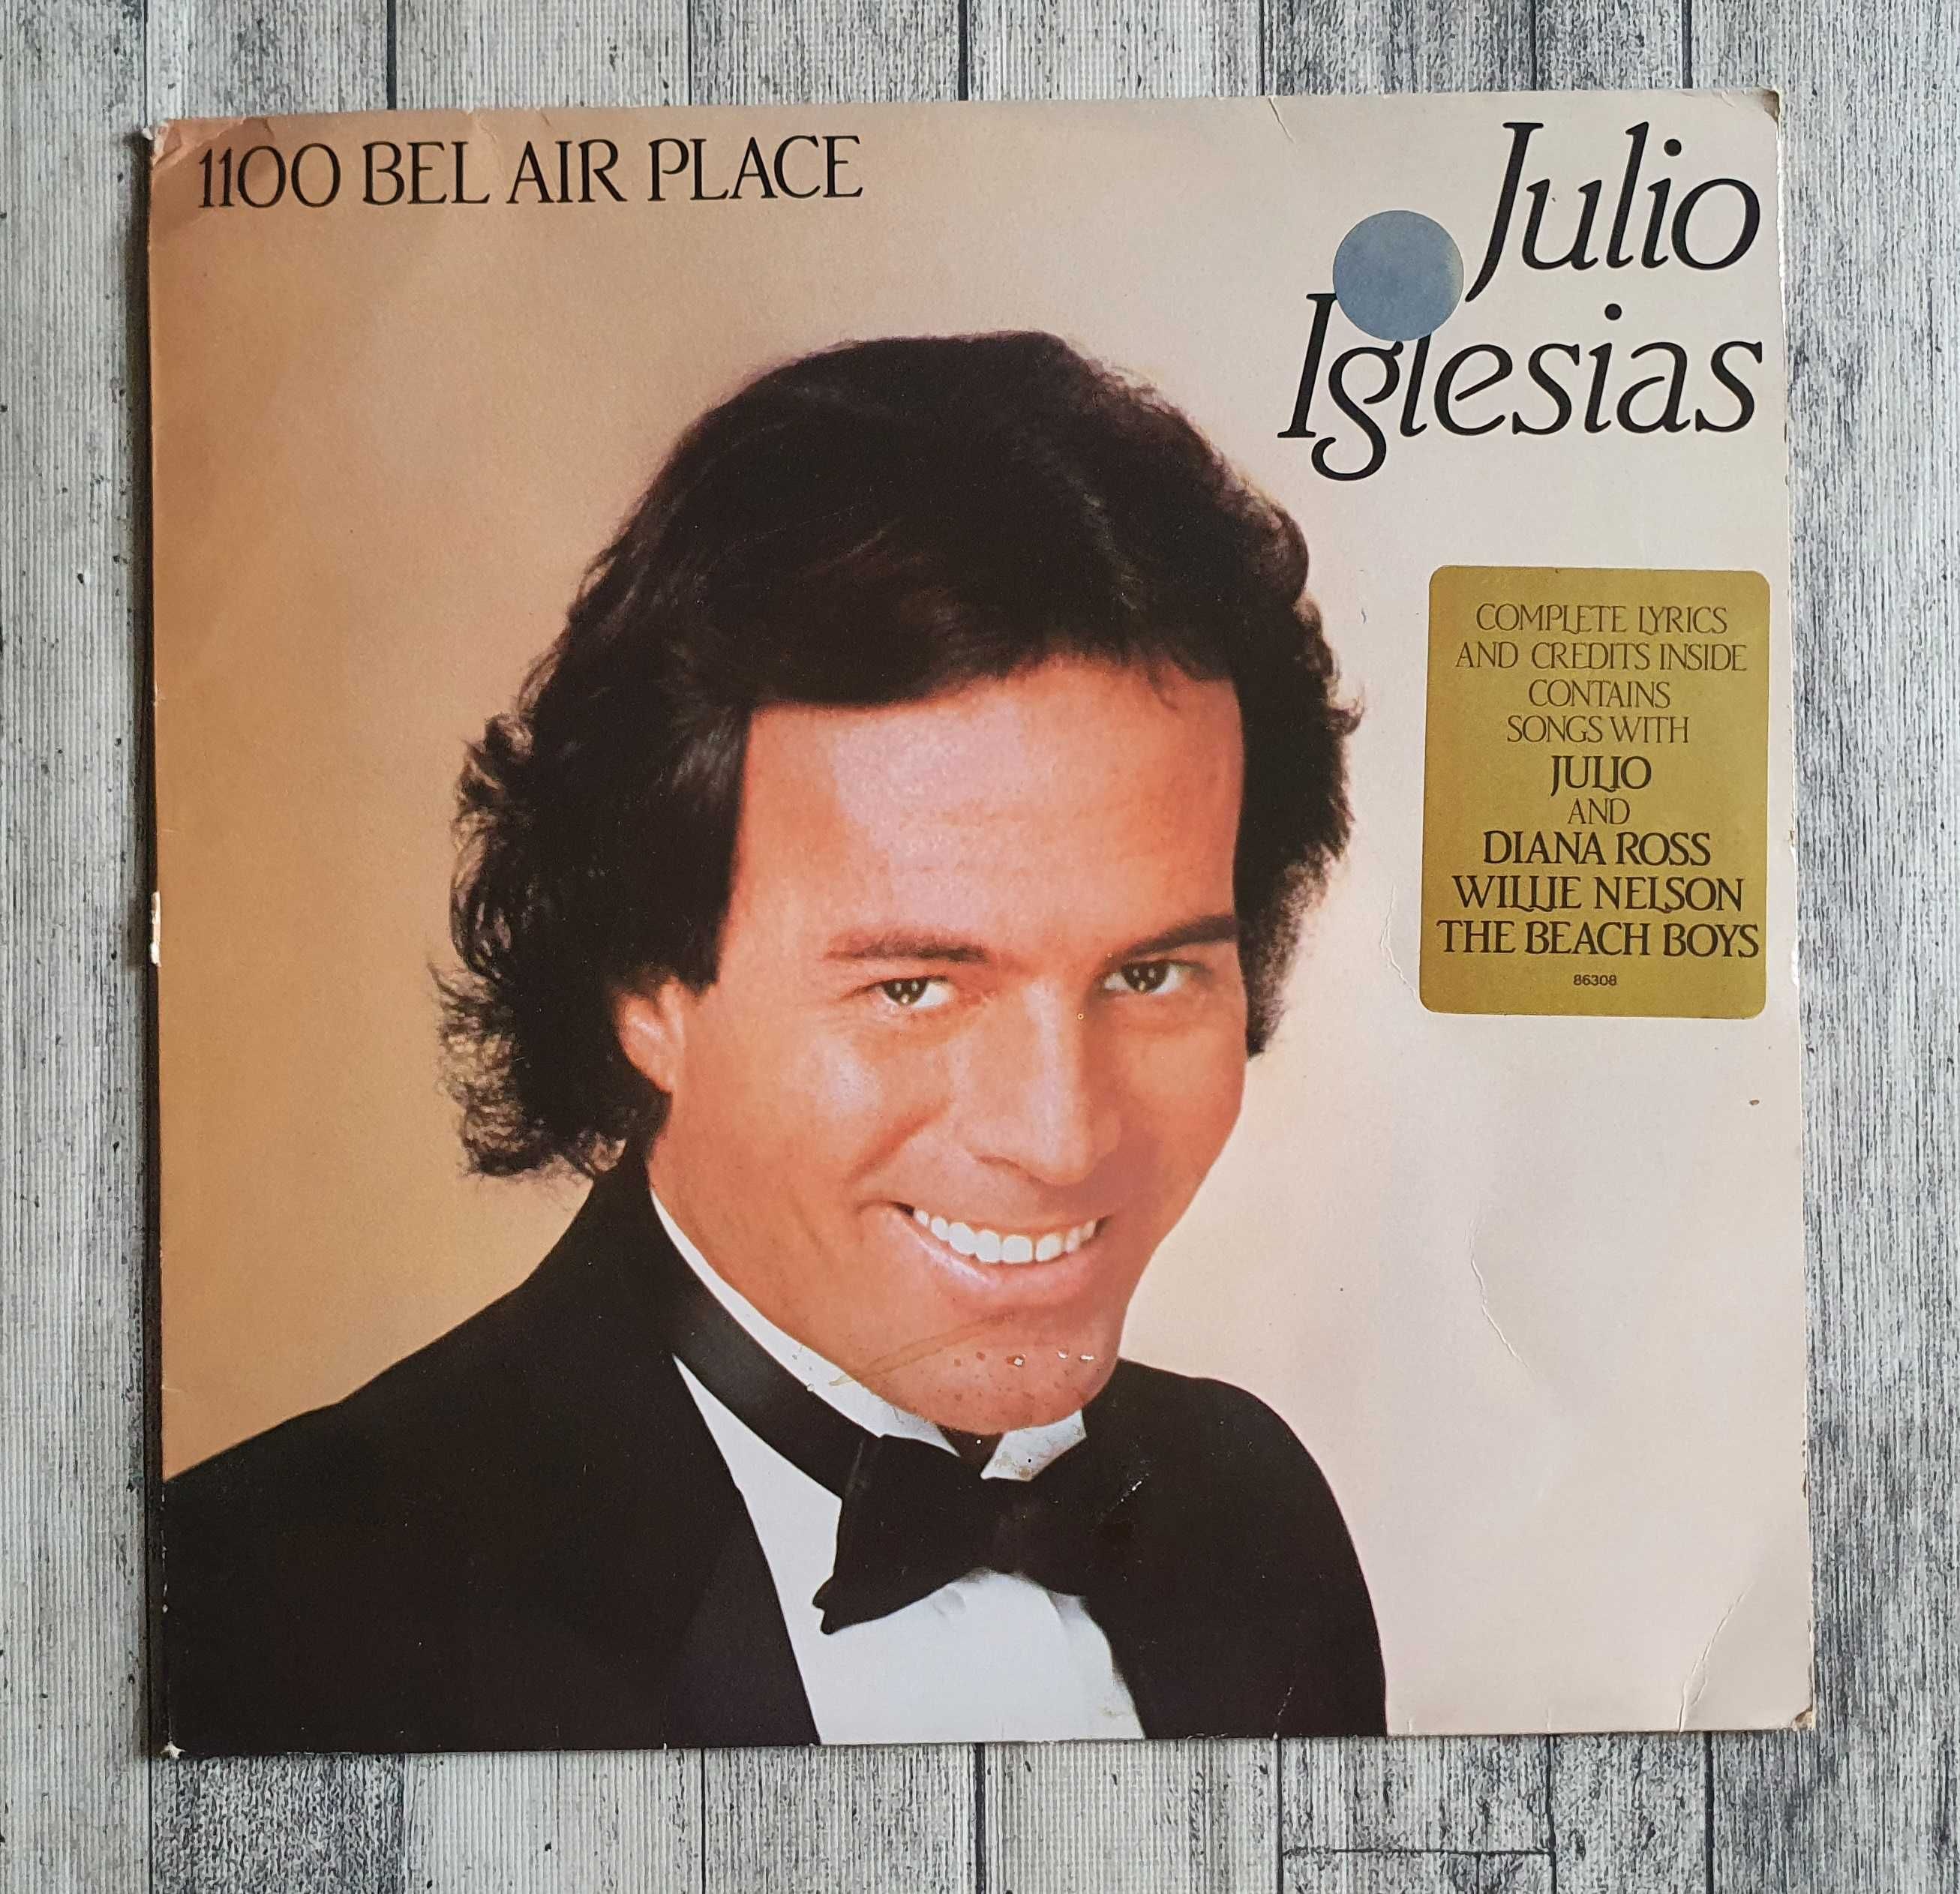 Julio Iglesias 1100 Bel Air Place LP 12